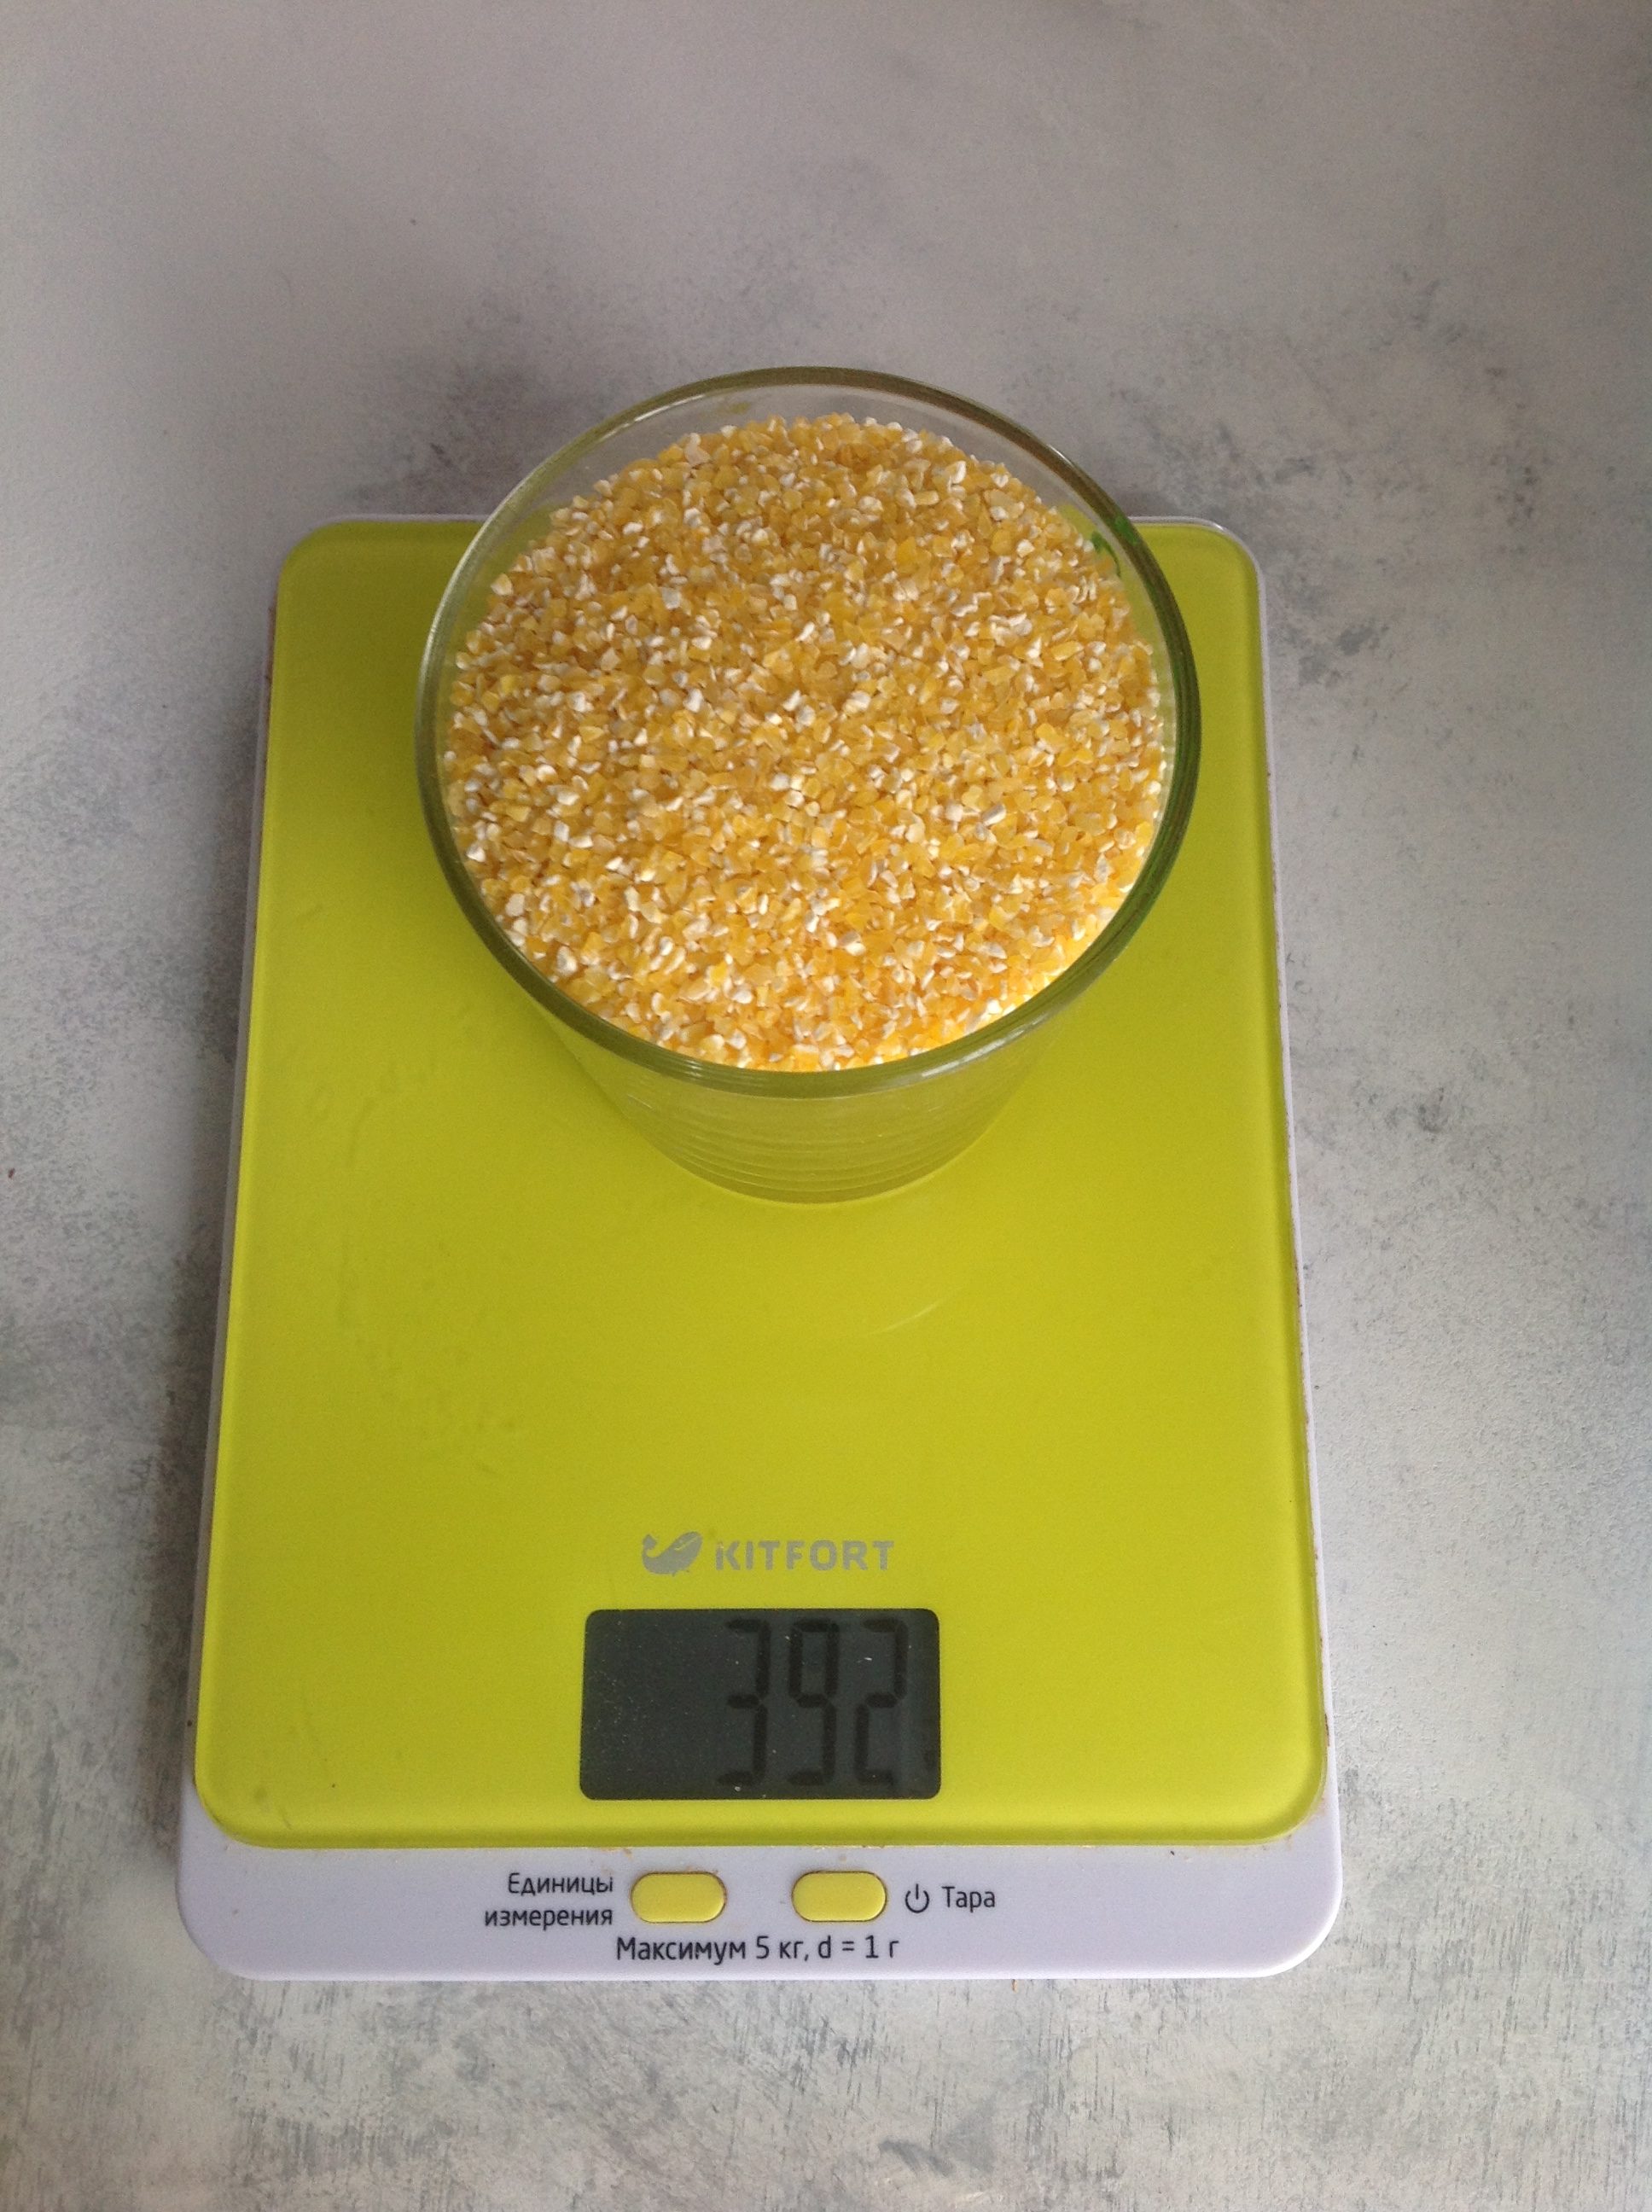 Wie viel wiegt trockener Maisgrieß in einem 250-ml-Glas?